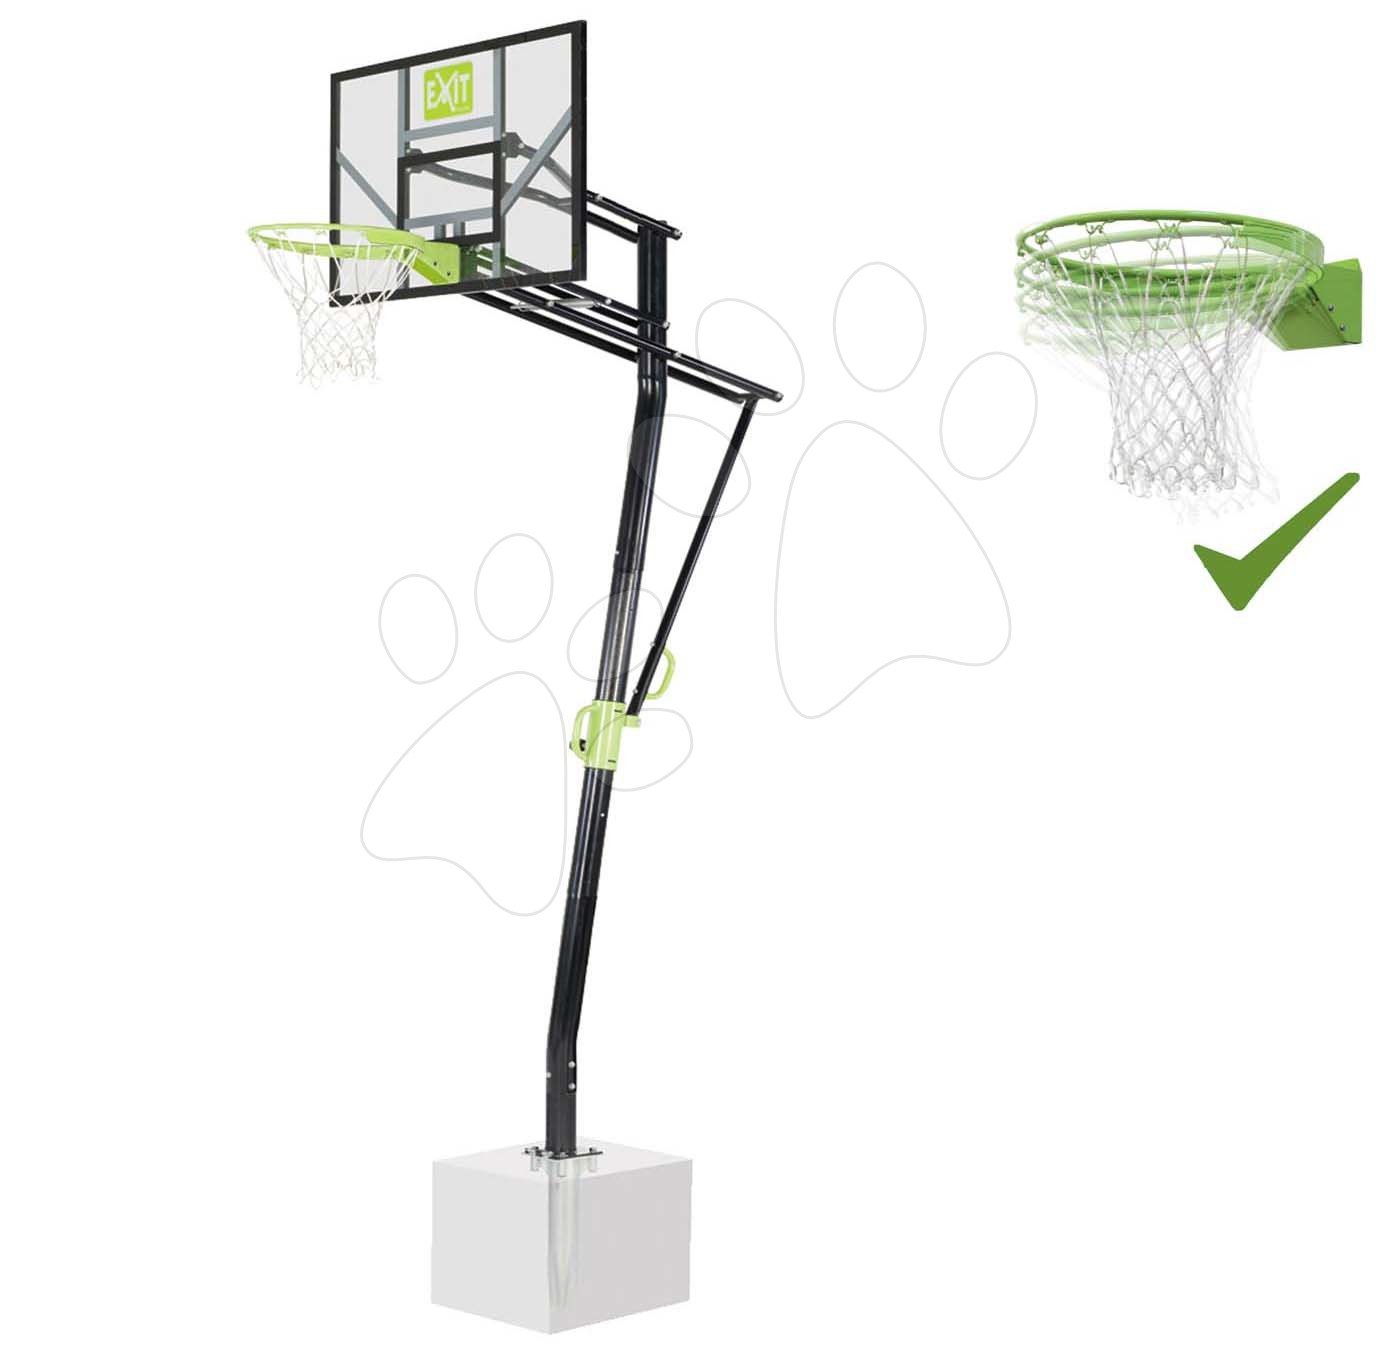 Basketbal - Basketbalová konštrukcia s doskou a flexibilným košom Galaxy Inground basketball Exit Toys oceľová uchytenie do zeme nastaviteľná výška